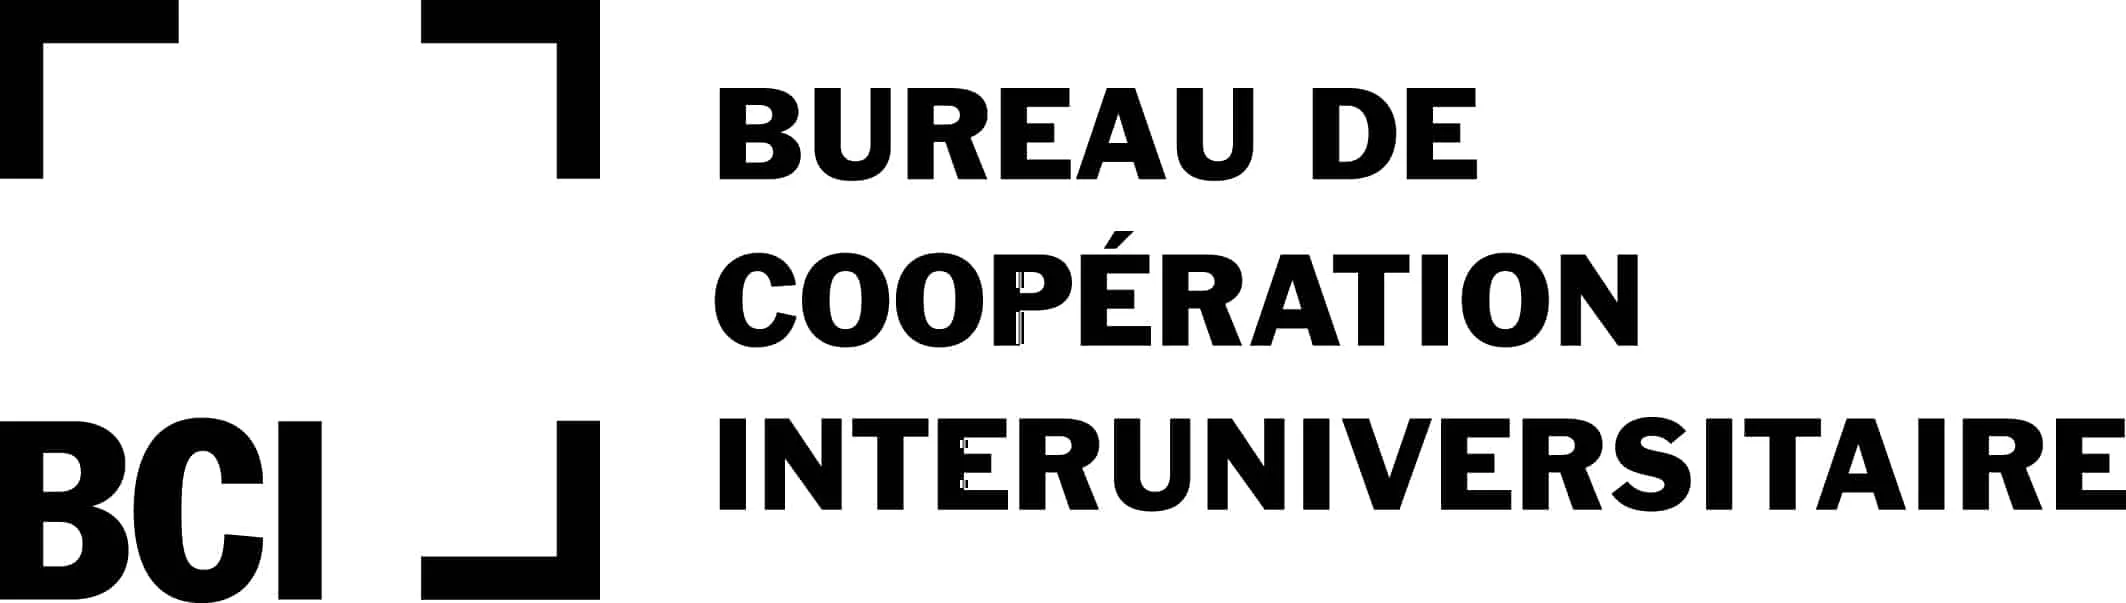 Bureau de coopération interuniversitaire